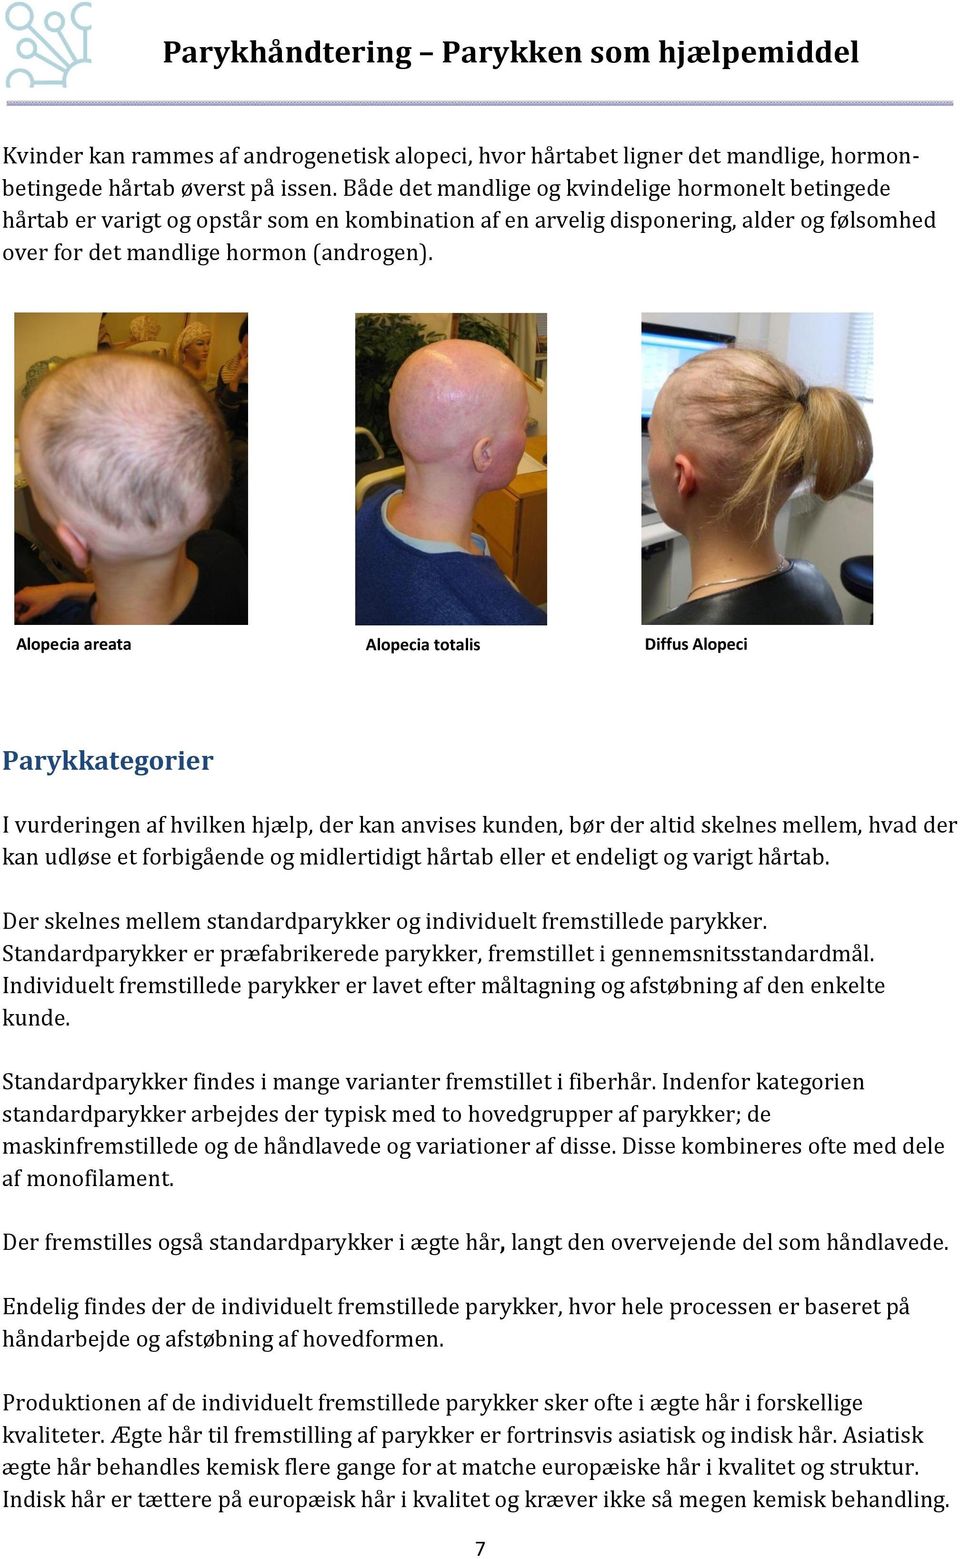 Alopecia areata Alopecia totalis Diffus Alopeci Parykkategorier I vurderingen af hvilken hjælp, der kan anvises kunden, bør der altid skelnes mellem, hvad der kan udløse et forbigående og